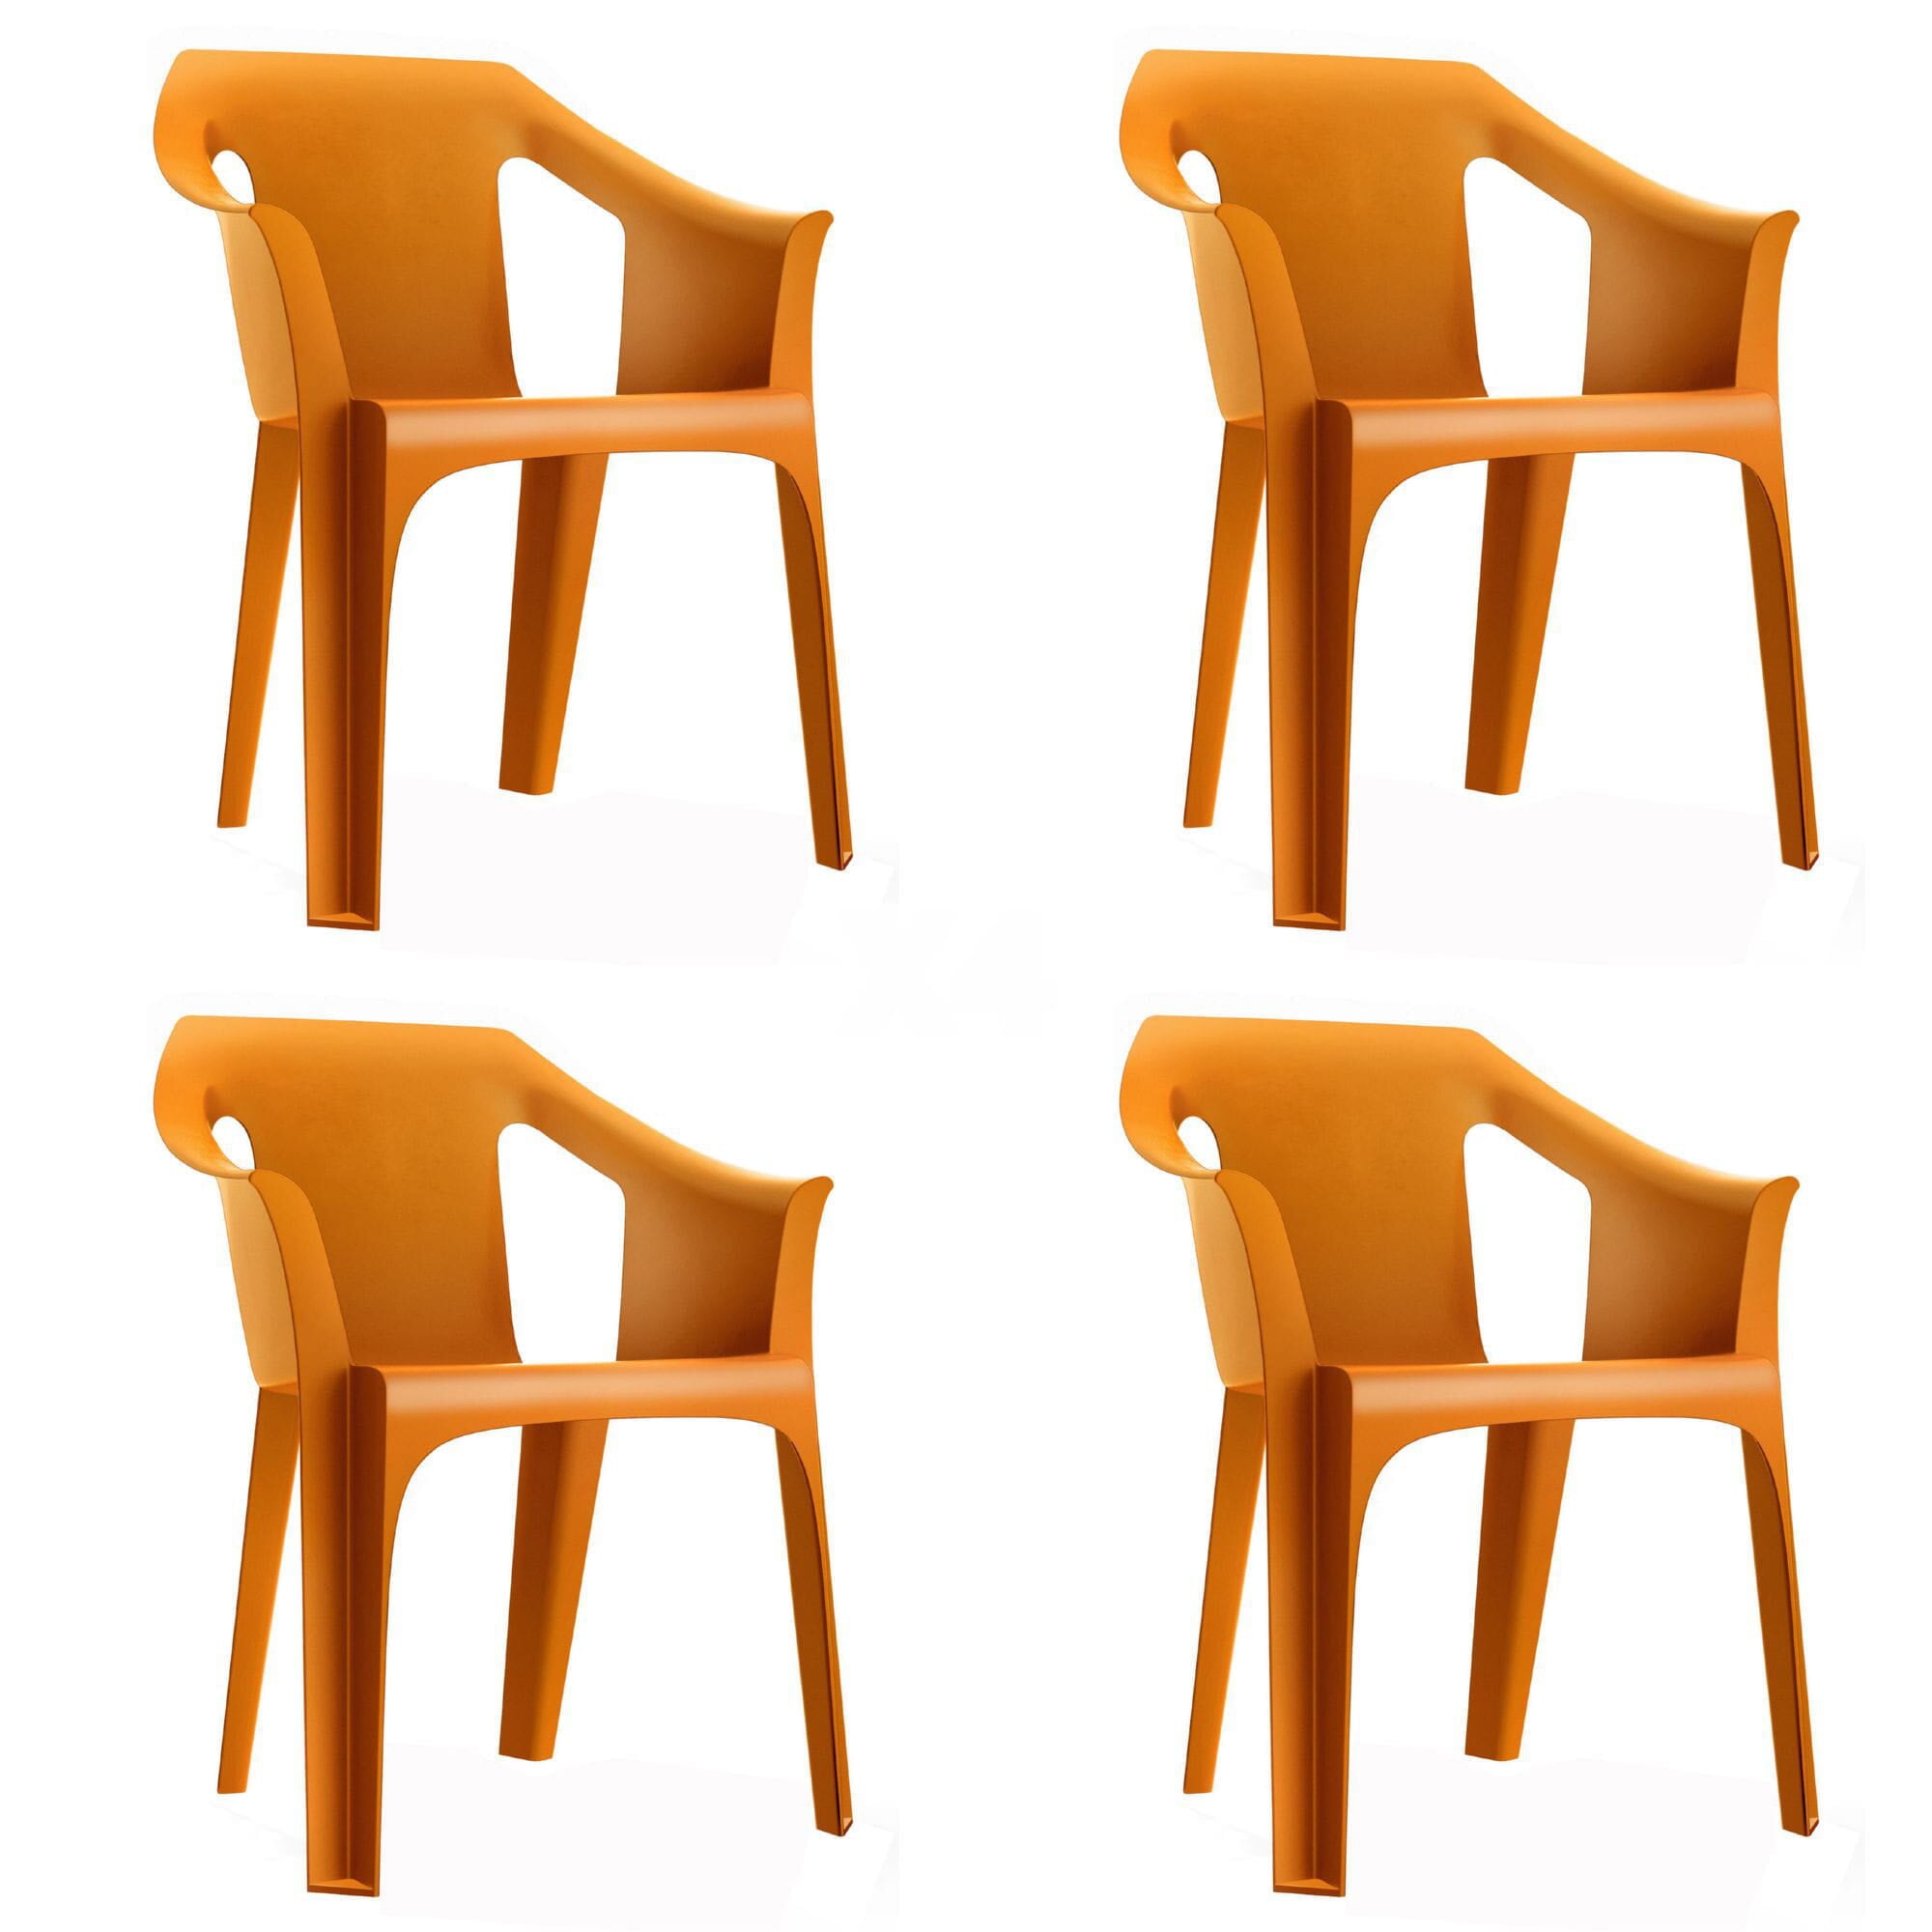 Garbar cool stoel buitenset 4 oranje